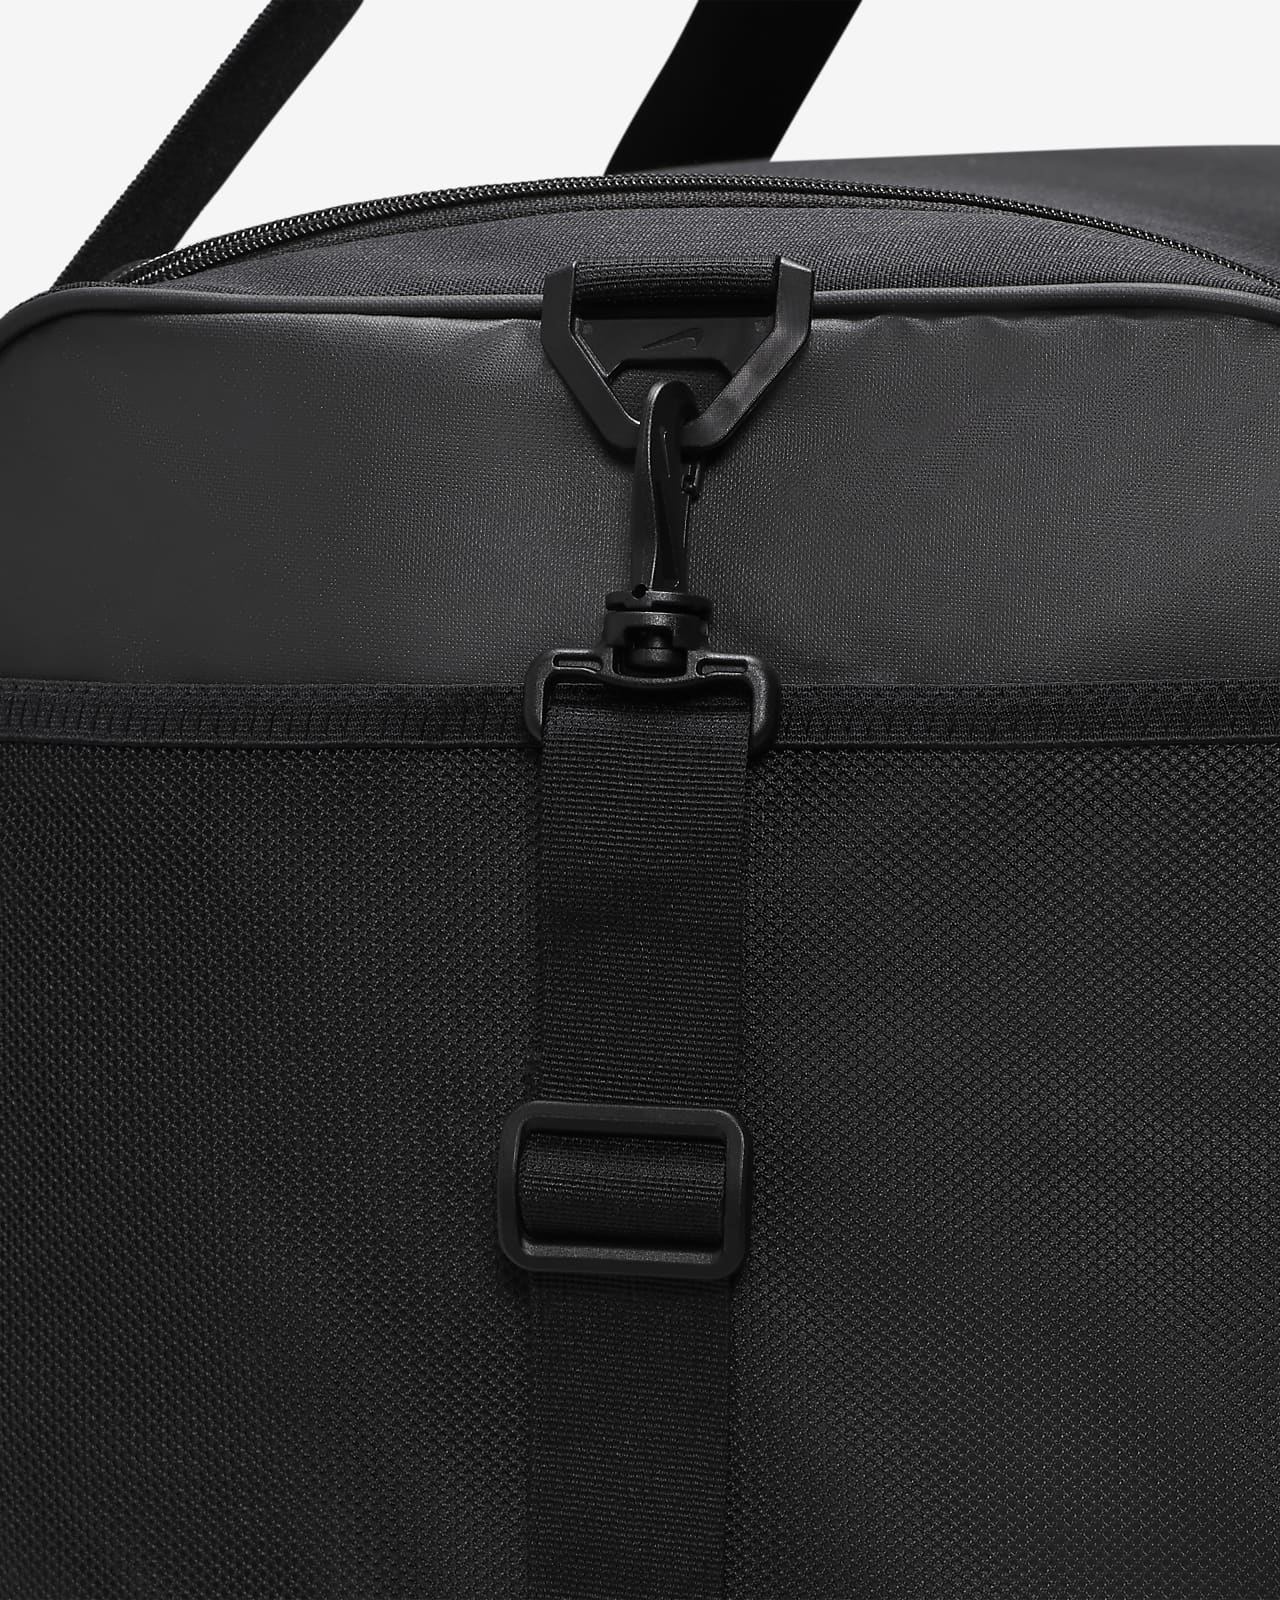 Brasilia 9.5 Duffel Bag in Black/White